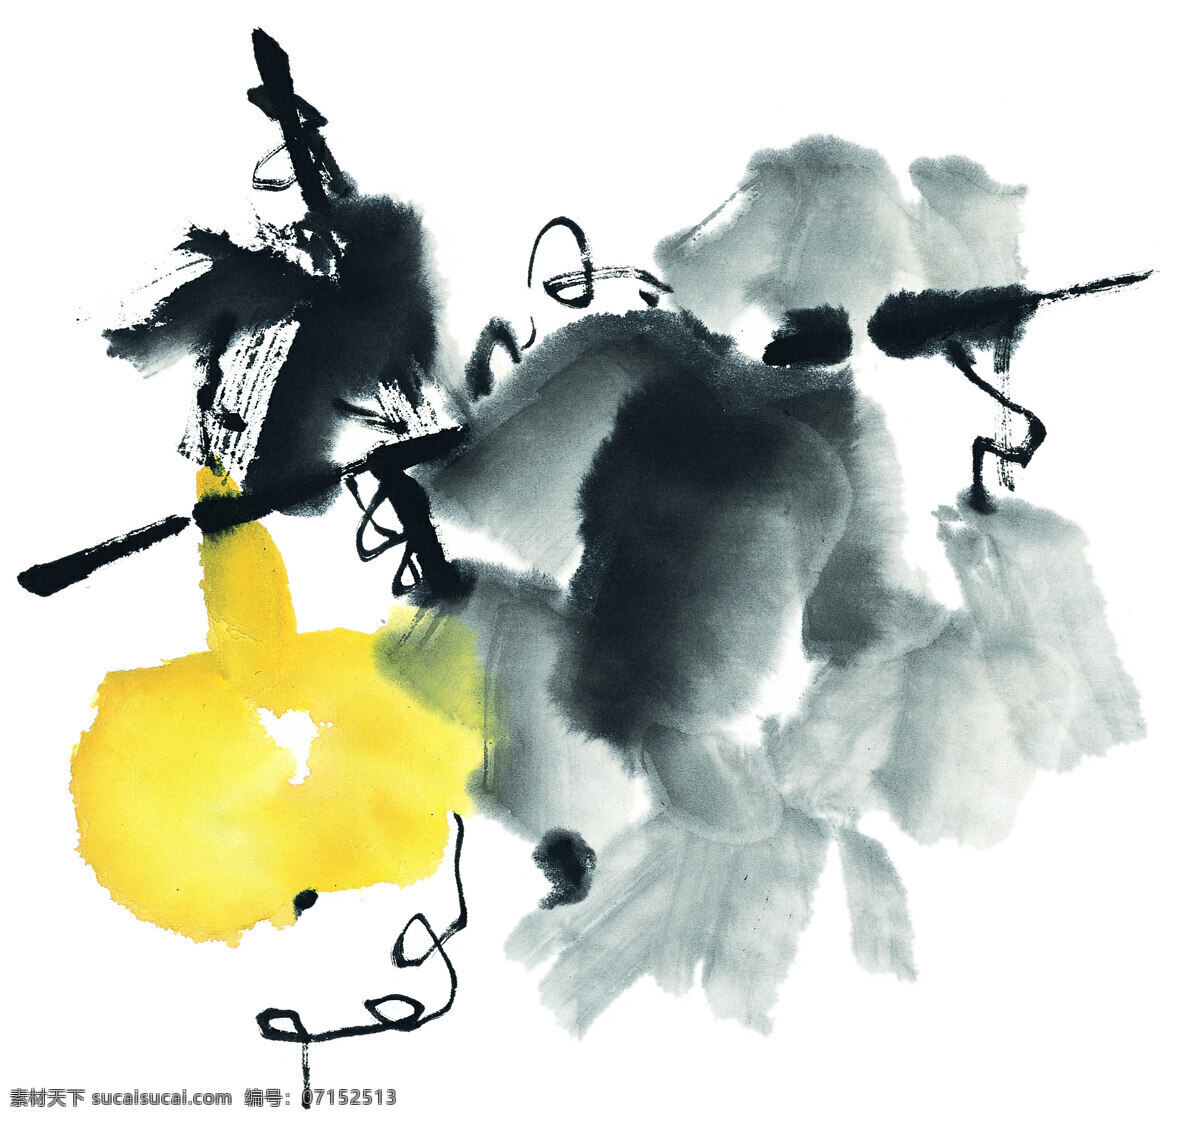 葫芦 架 工笔 国画 绘画 墨染 水果 桃子 写意 艺术 中国画 葫芦架 文化艺术